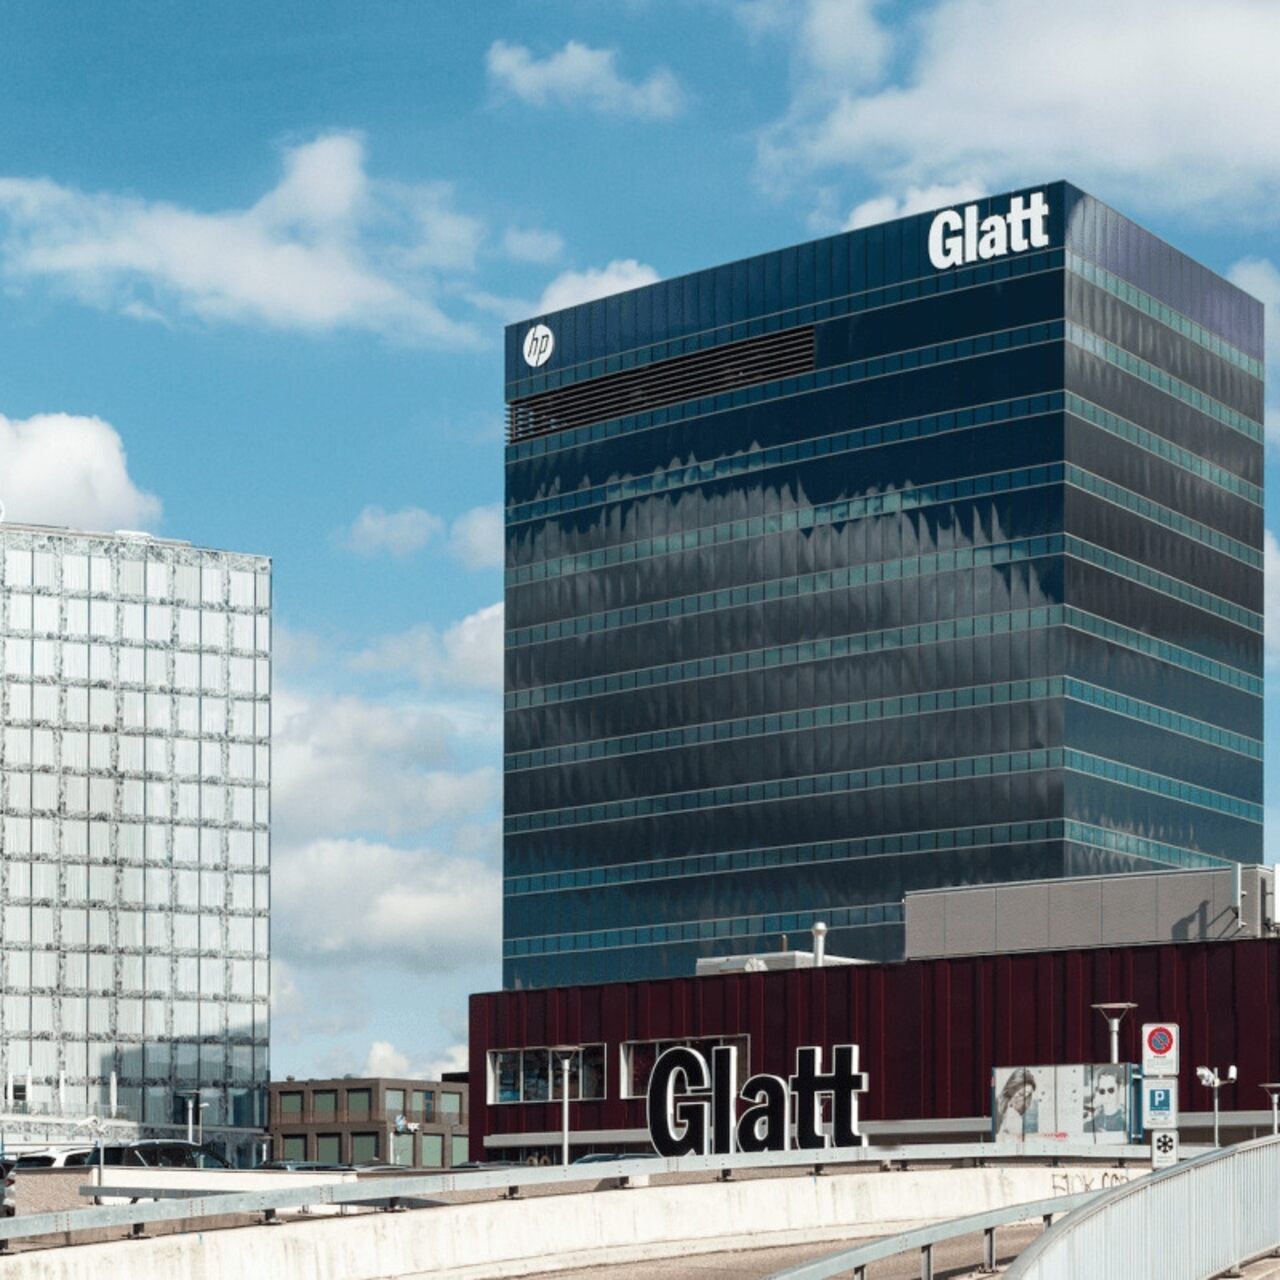 Manažment služieb: Einkaufszentrum Glatt, ktorý sa nachádza na čísle 99 Neue Winterthurerstrasse vo Wallisene, približne dvadsať minút S-Bahn od centra Zürichu, bude hostiť každoročné podujatie itSMF Švajčiarsko 21. marca 2024